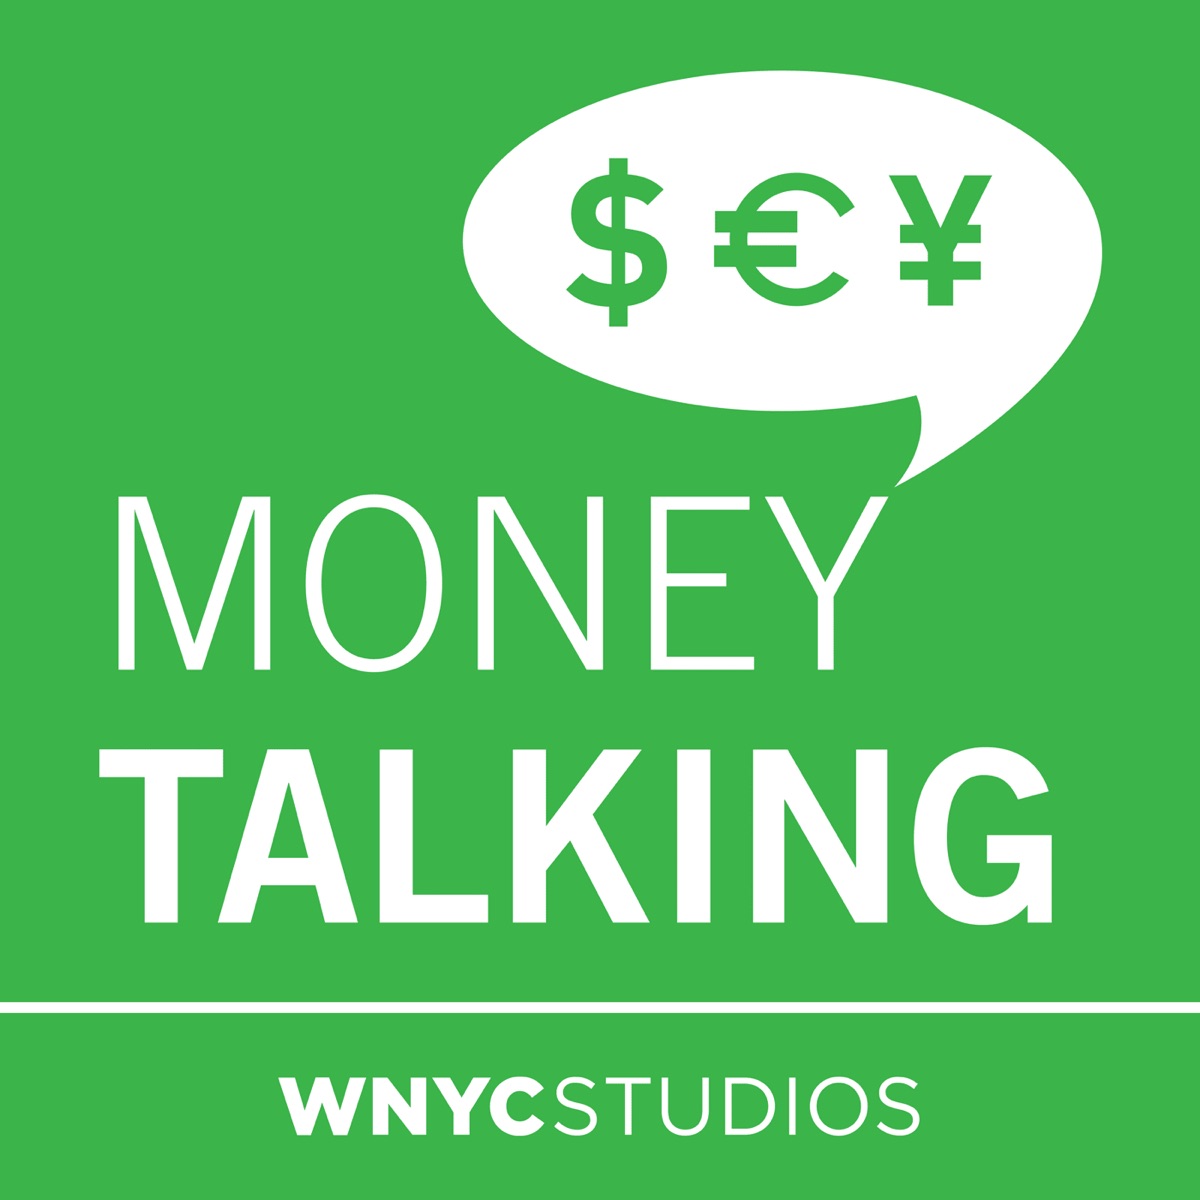 Money talking. Money talks. Talking money 2